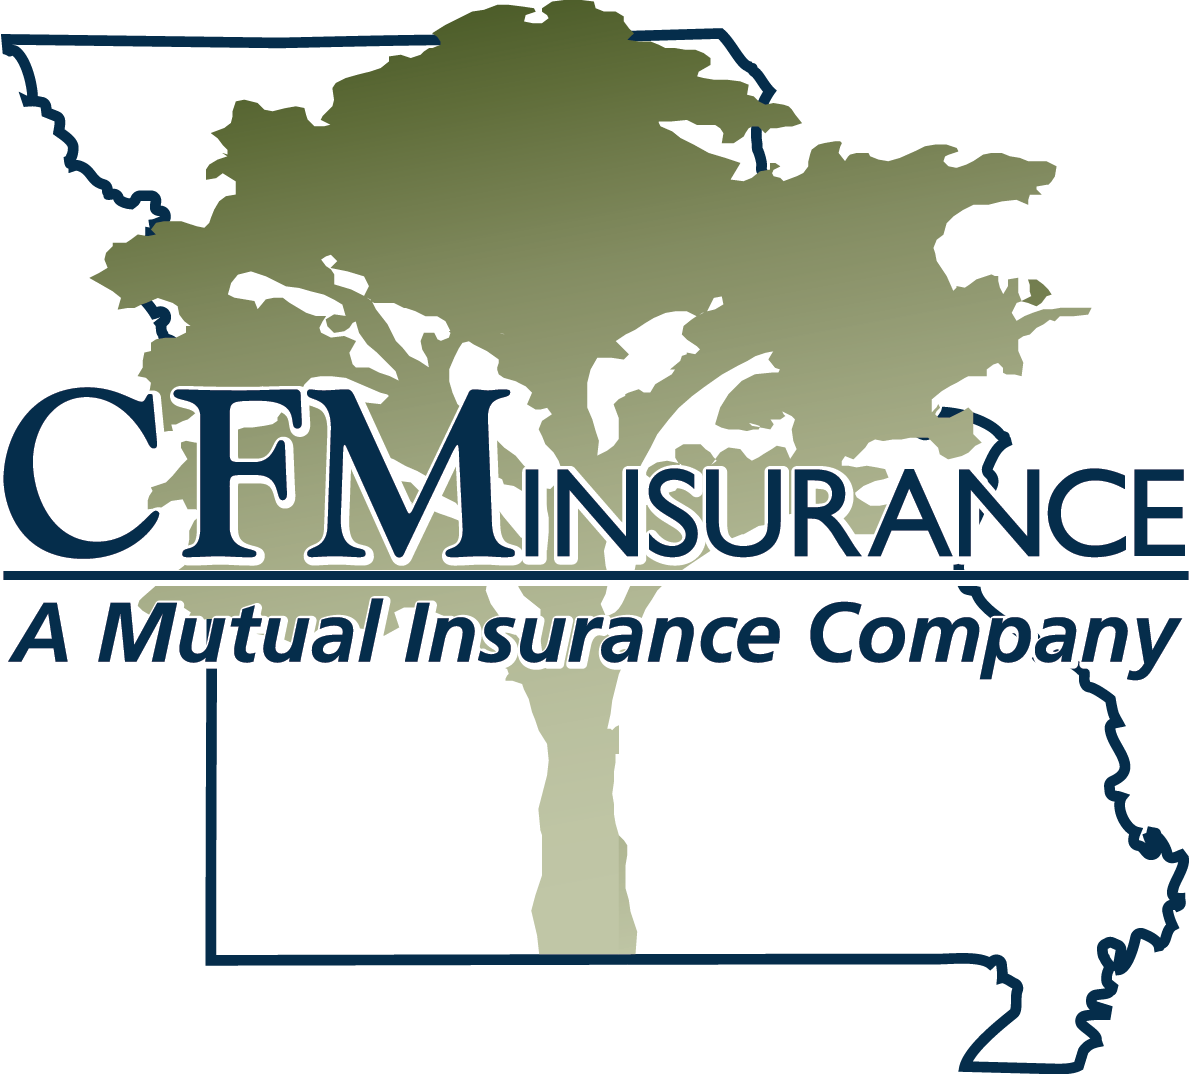 CFM Insurance